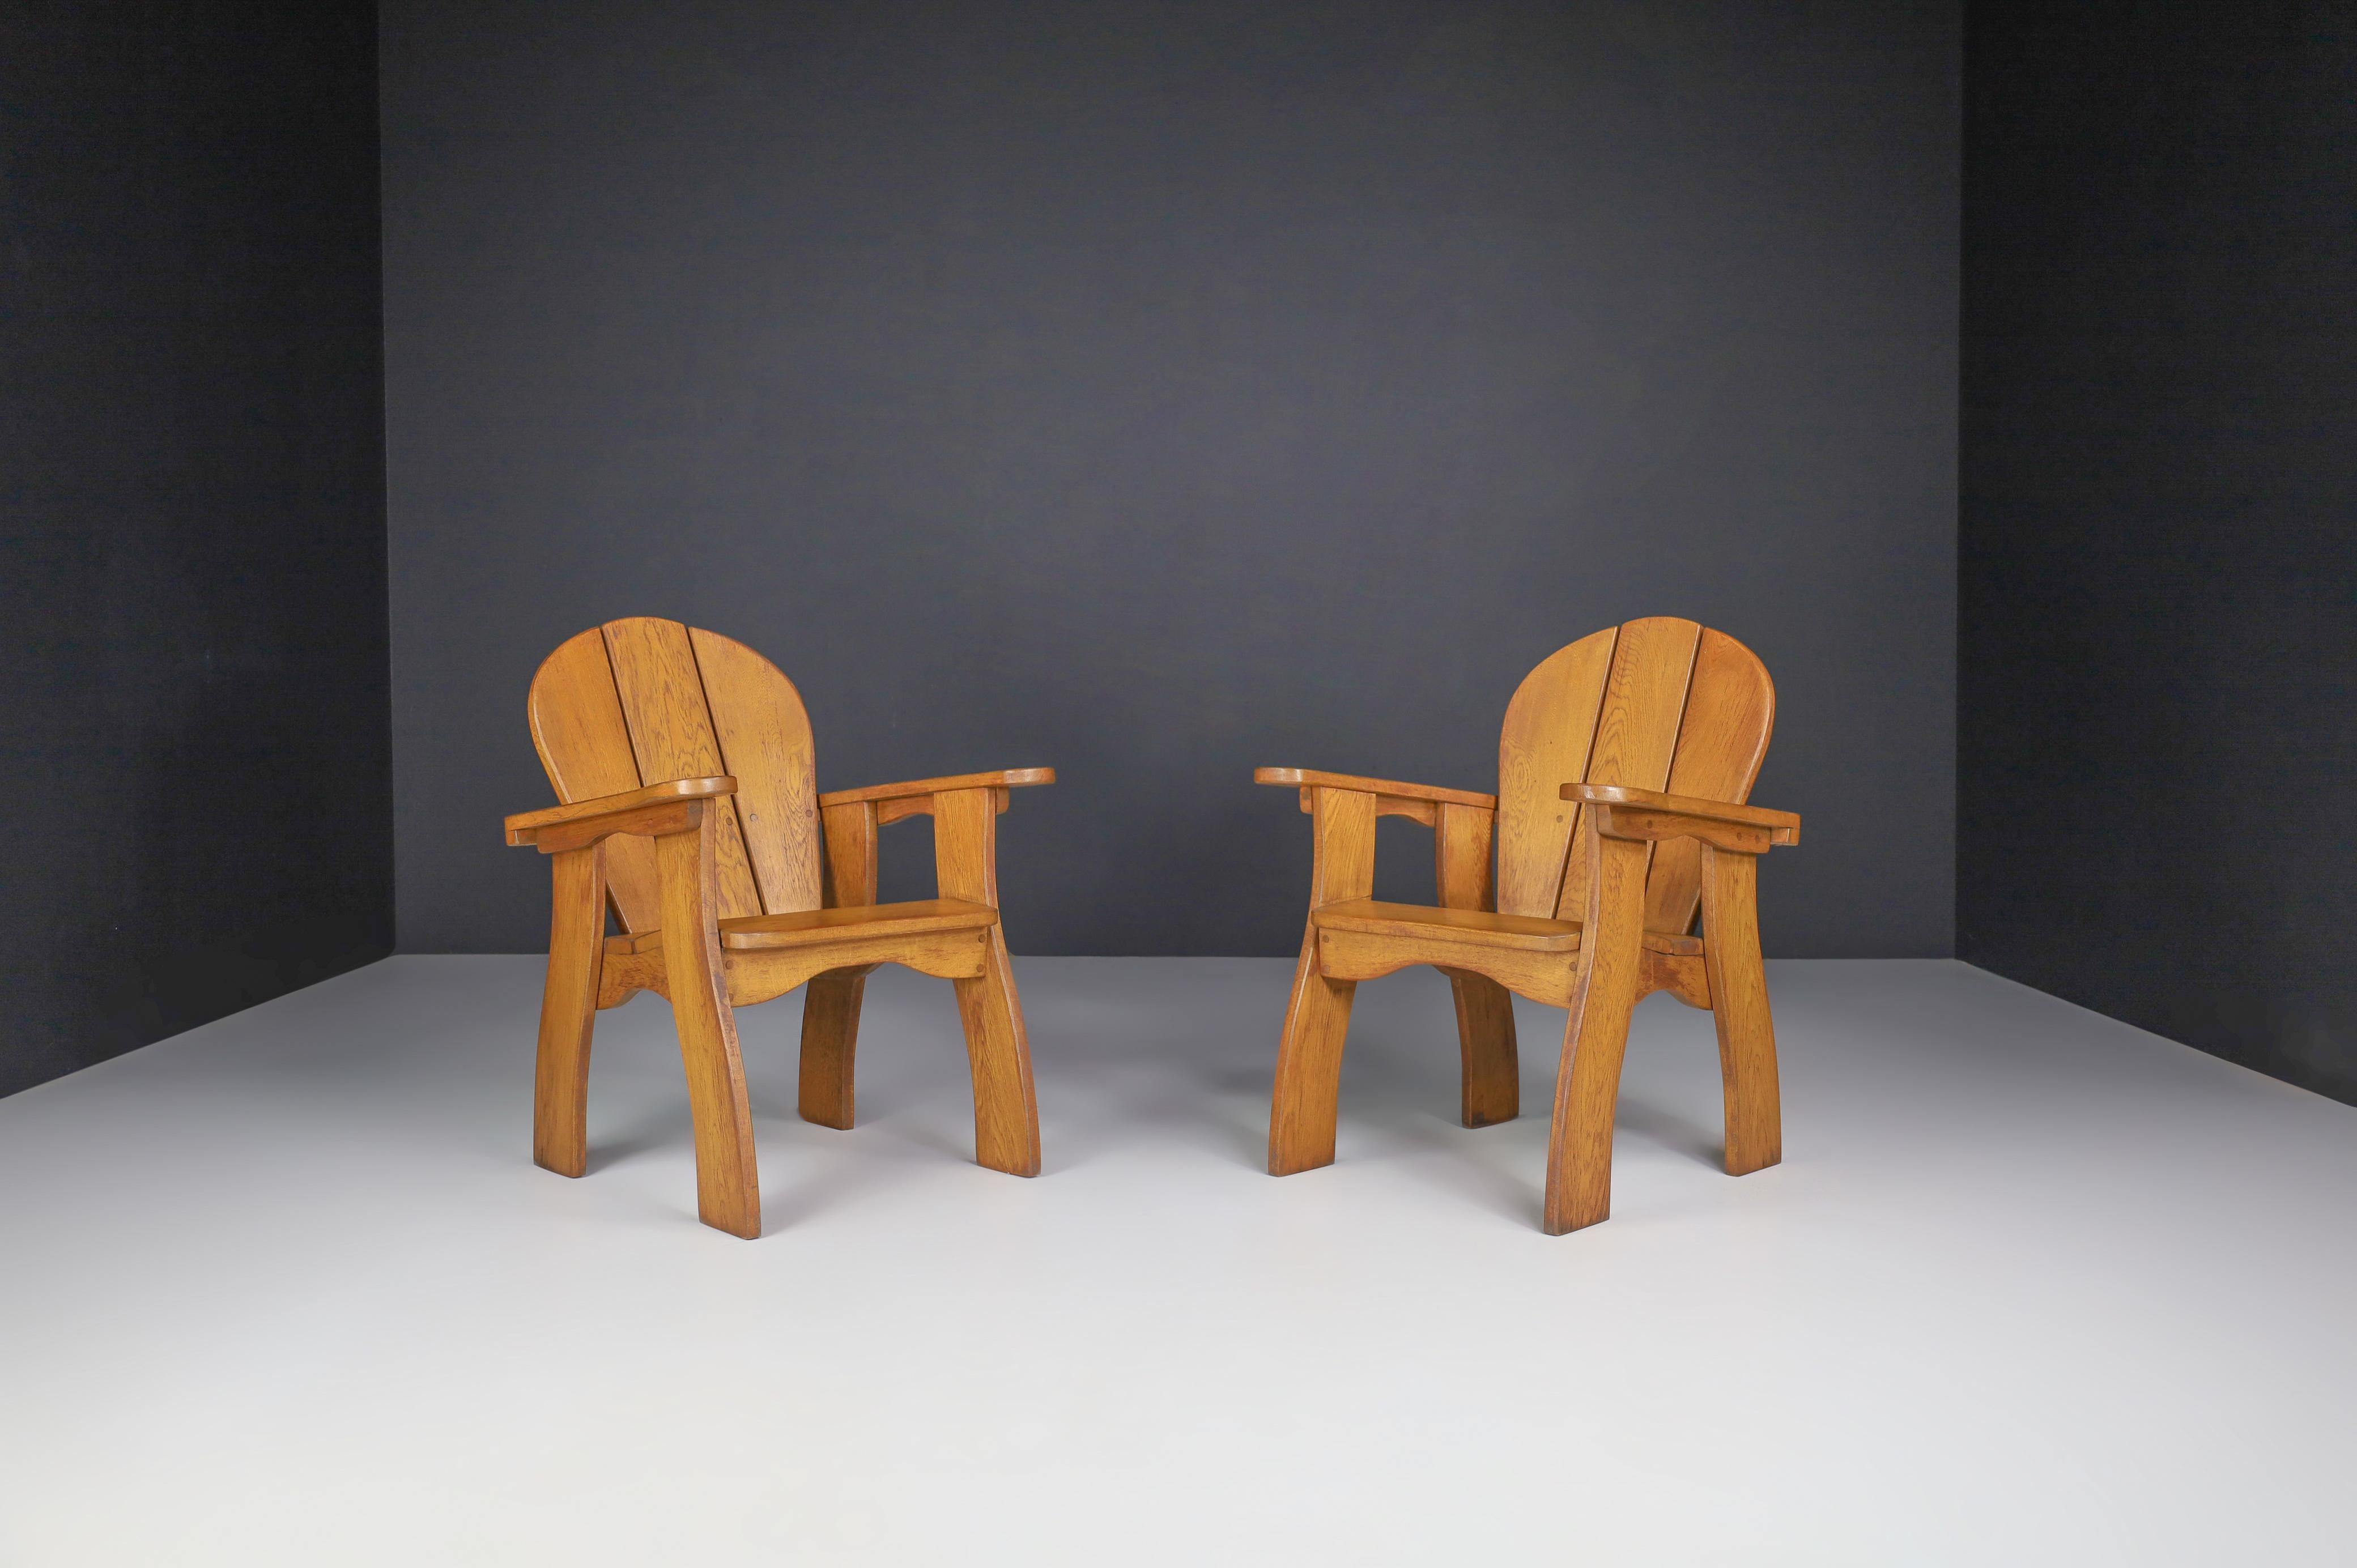 Ensemble de deux fauteuils sculpturaux en chêne, France, années 1960.

Ensemble de deux fauteuils sculpturaux, ces chaises sont fabriquées en chêne français et sculptées à la main en France dans les années 1960. Le travail artisanal est encore